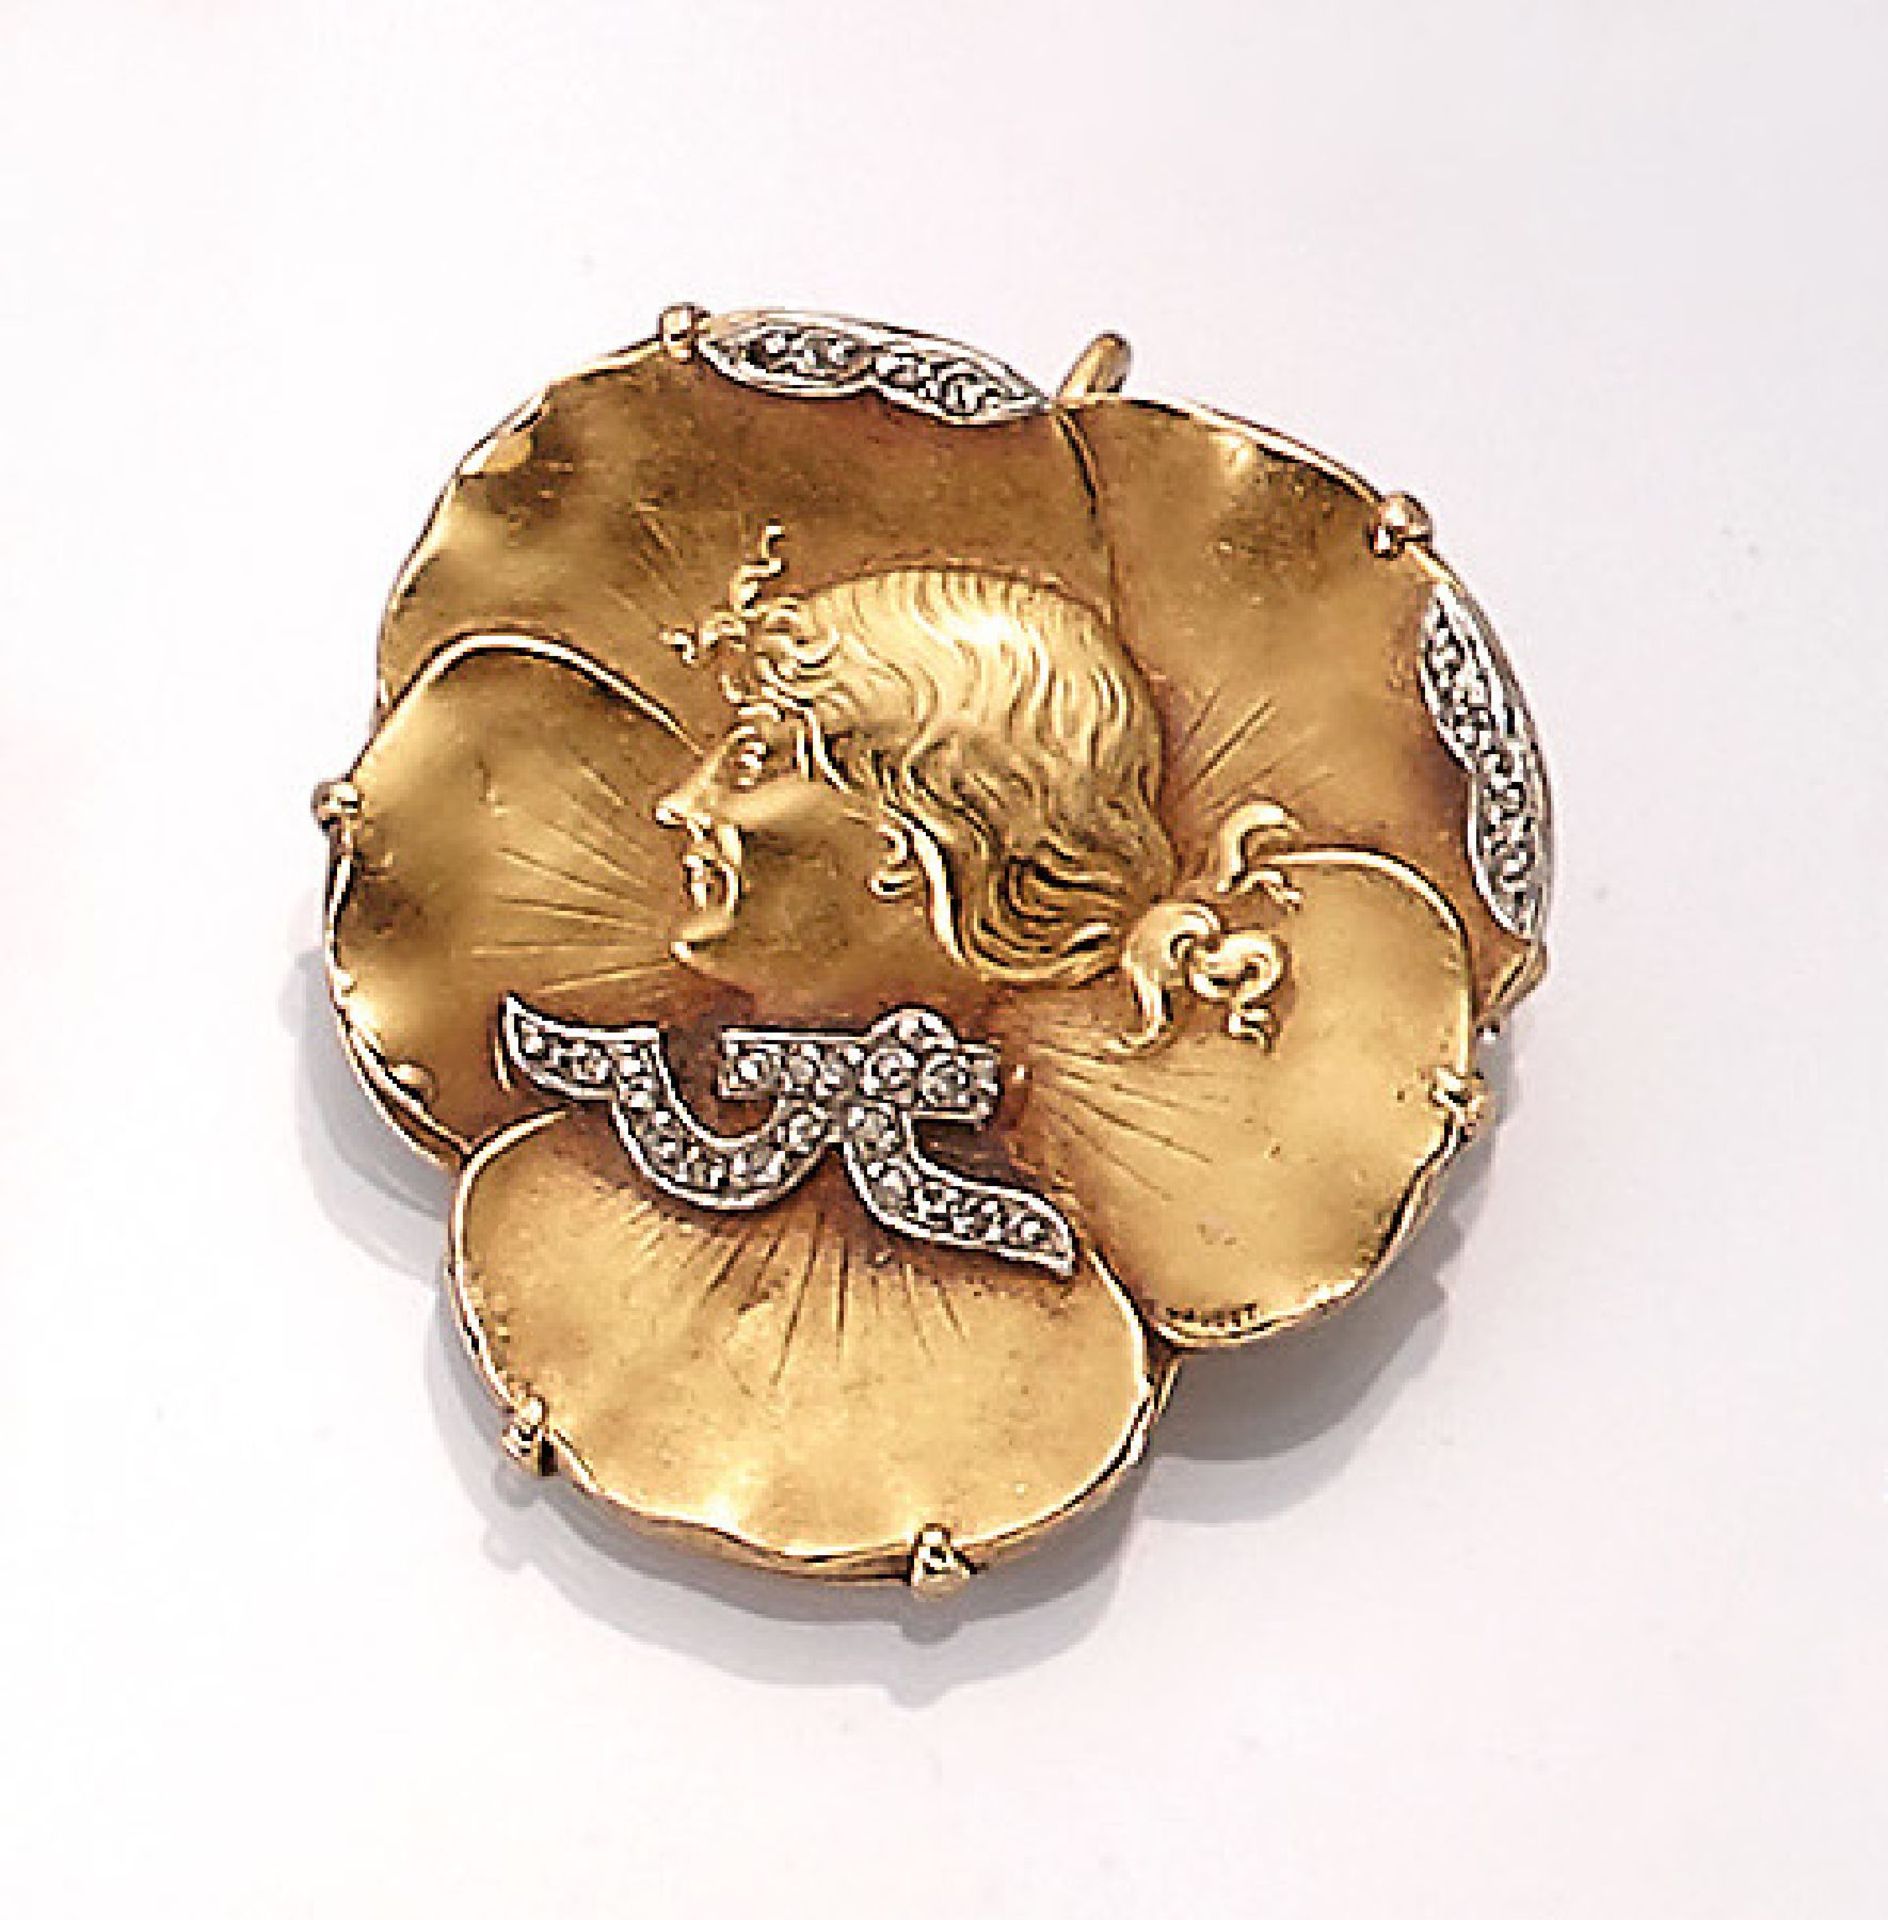 18 kt Gold Jugendstilanhänger/-brosche, Frankreich um 1900, GG 750/000, Darst. einer